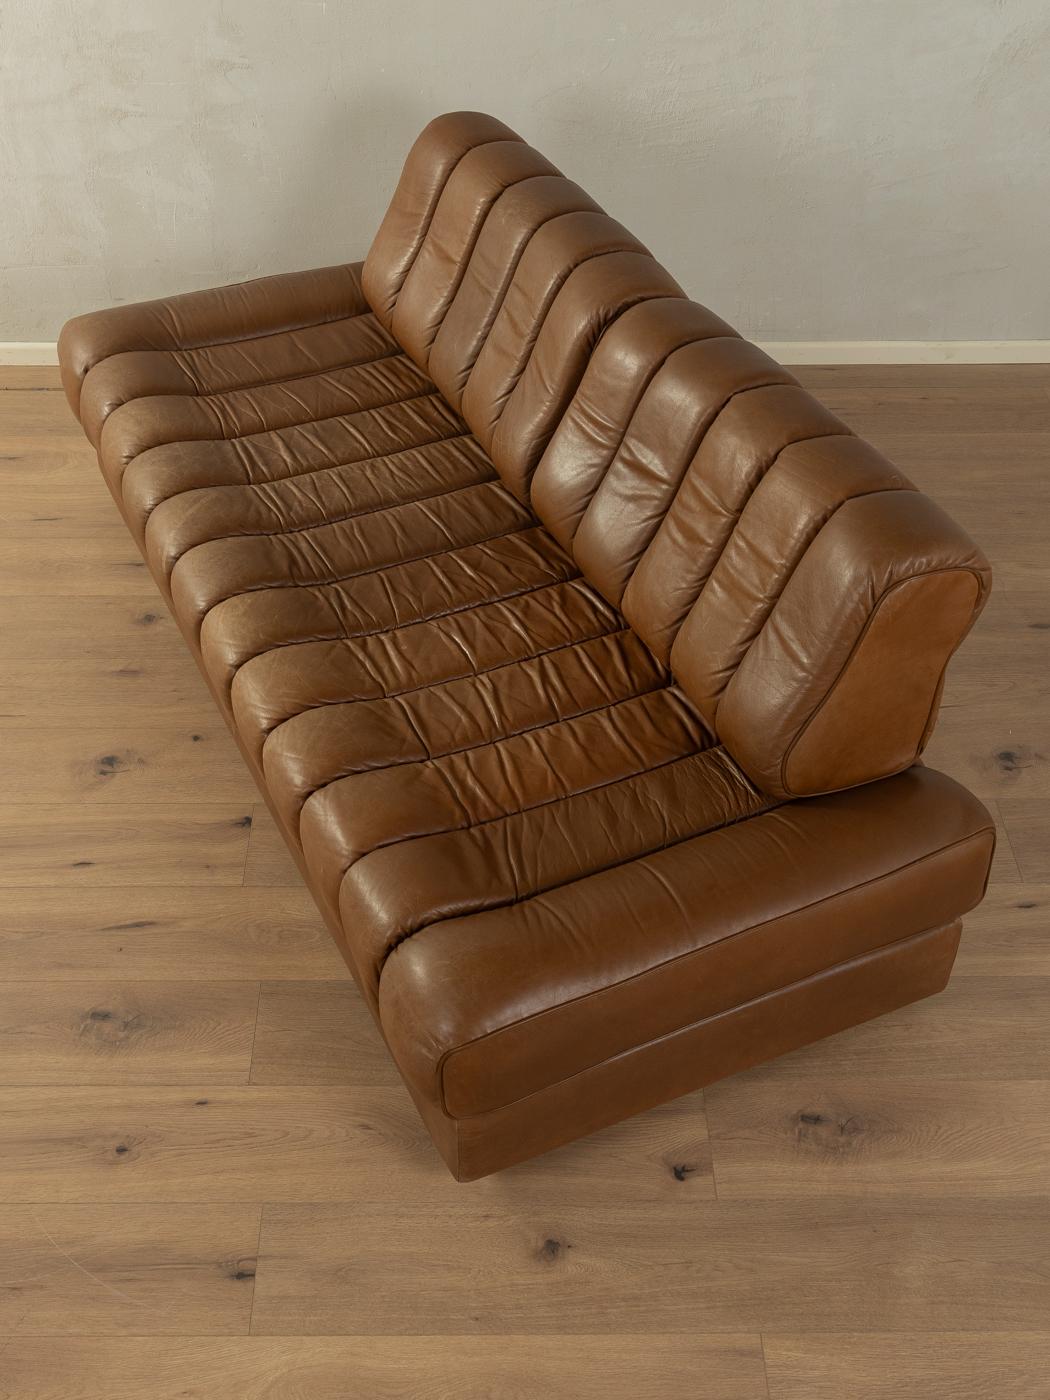 Mid-Century Modern  Convertible sofa, de Sede, DS-85 